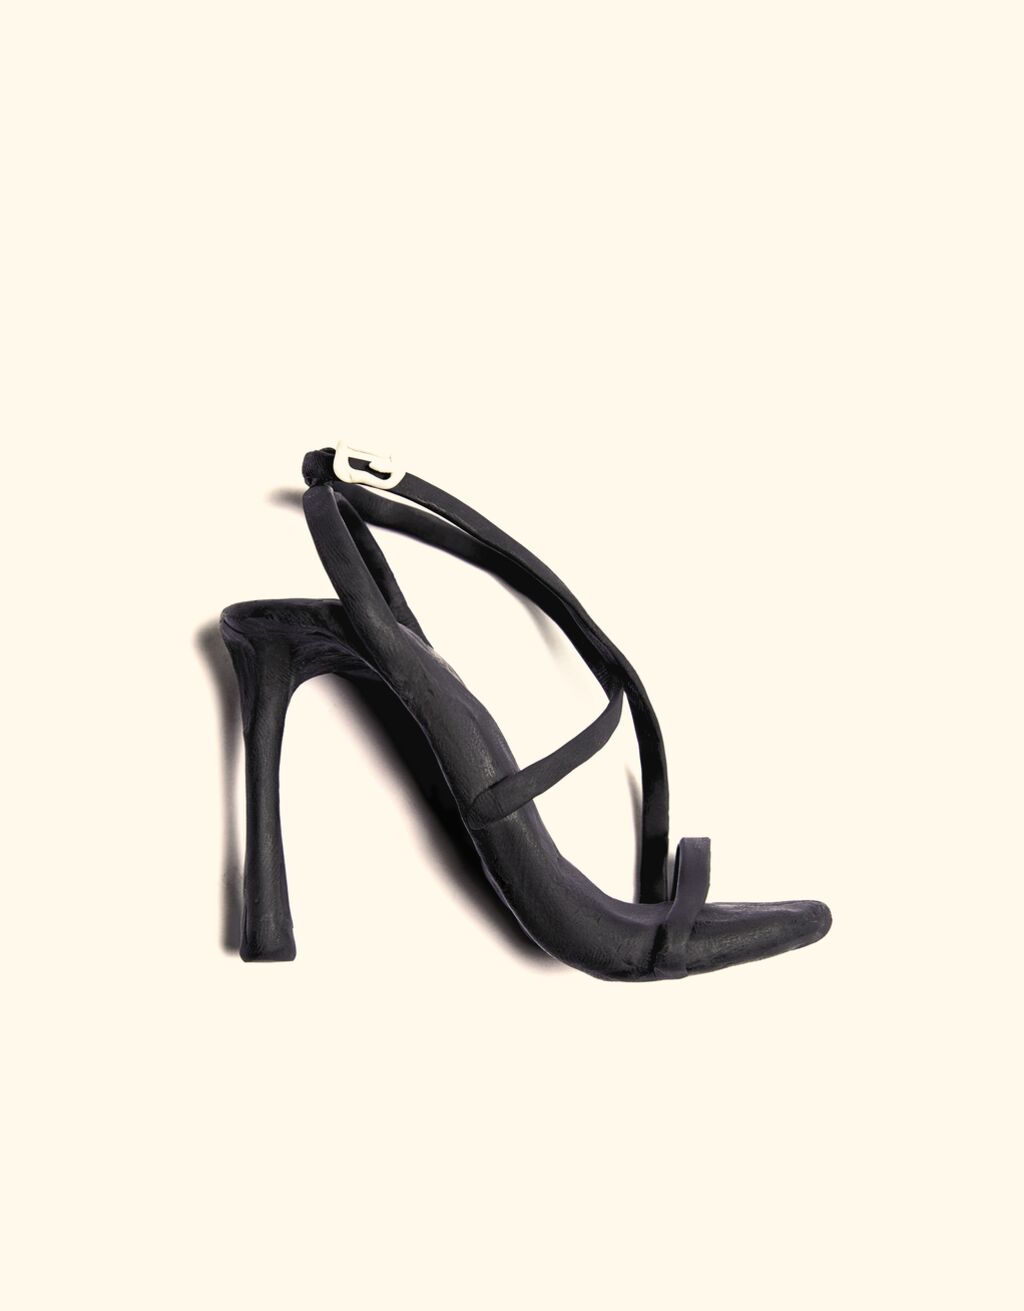 Strappy stiletto heel sandals